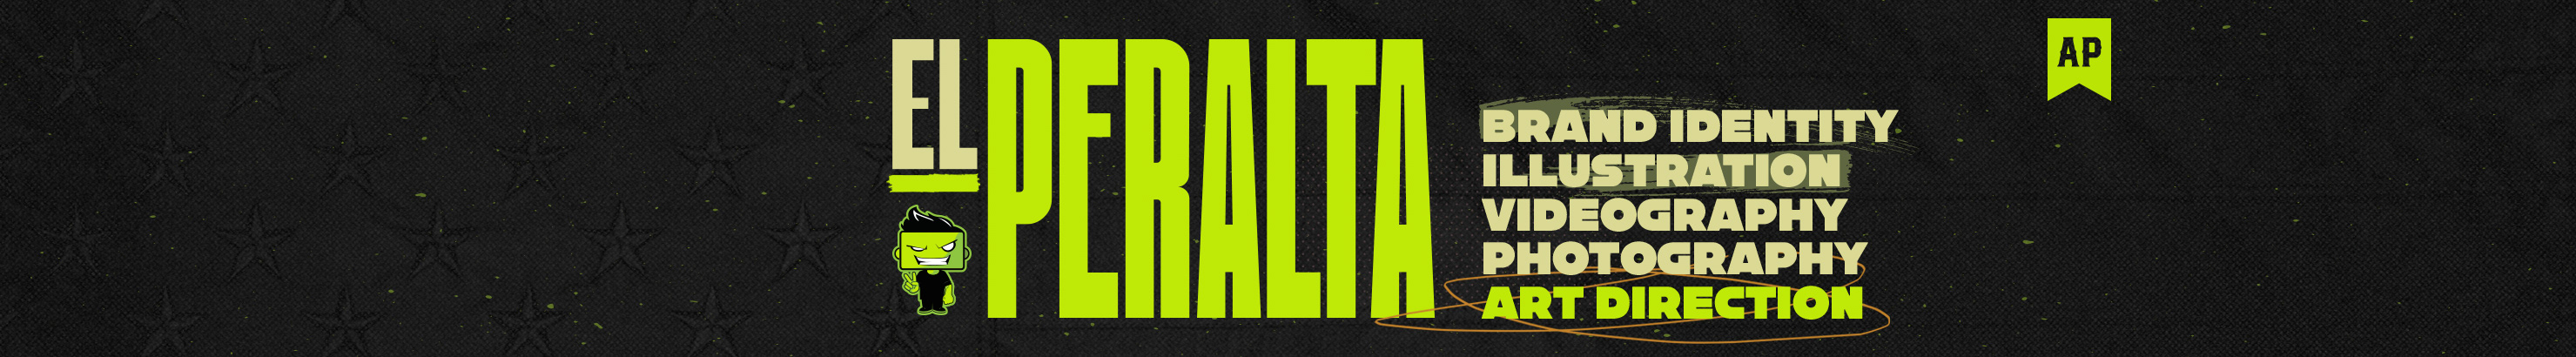 Arturo Peralta's profile banner